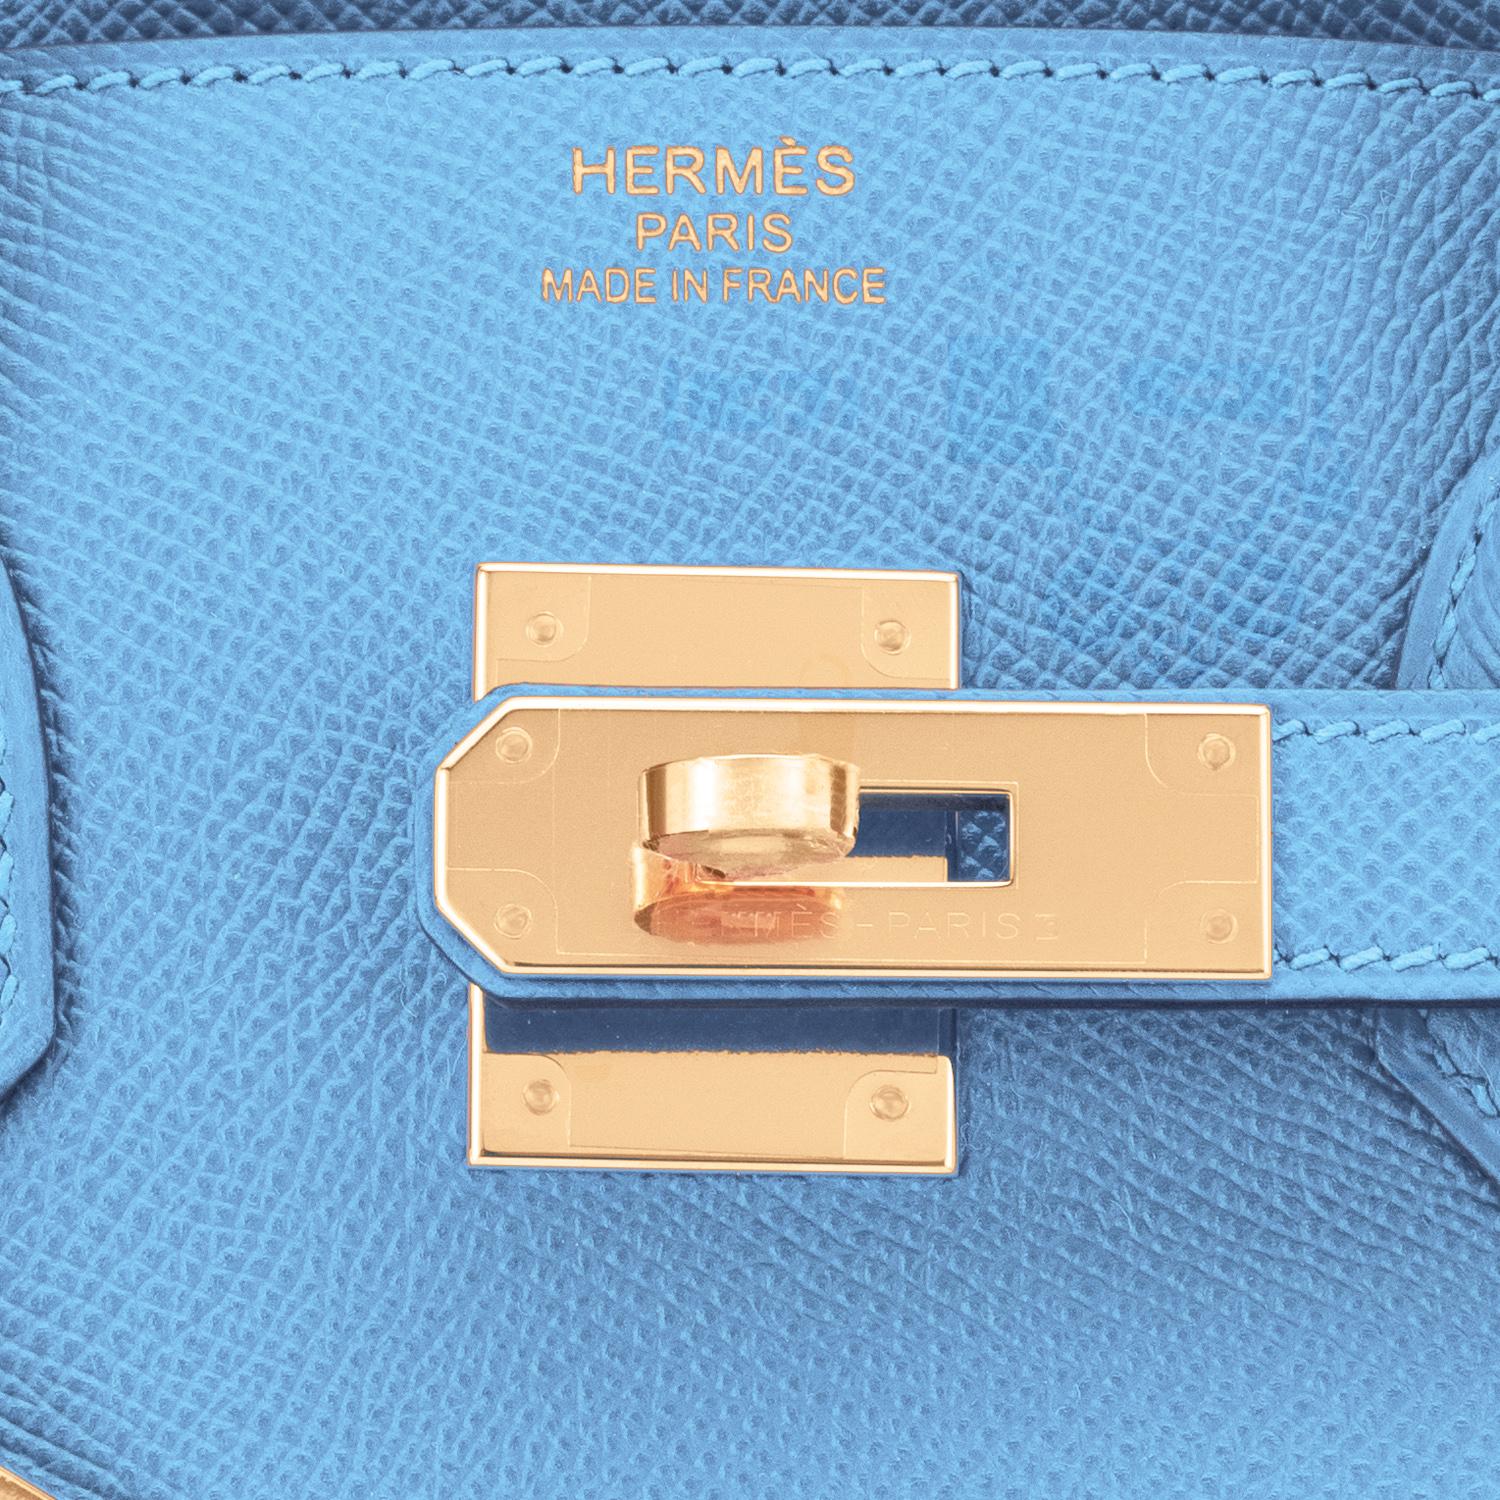 Hermes Birkin 30cm Celeste Birkin Sky Blue Epsom Gold Hardware Bag NEW IN BOX 4